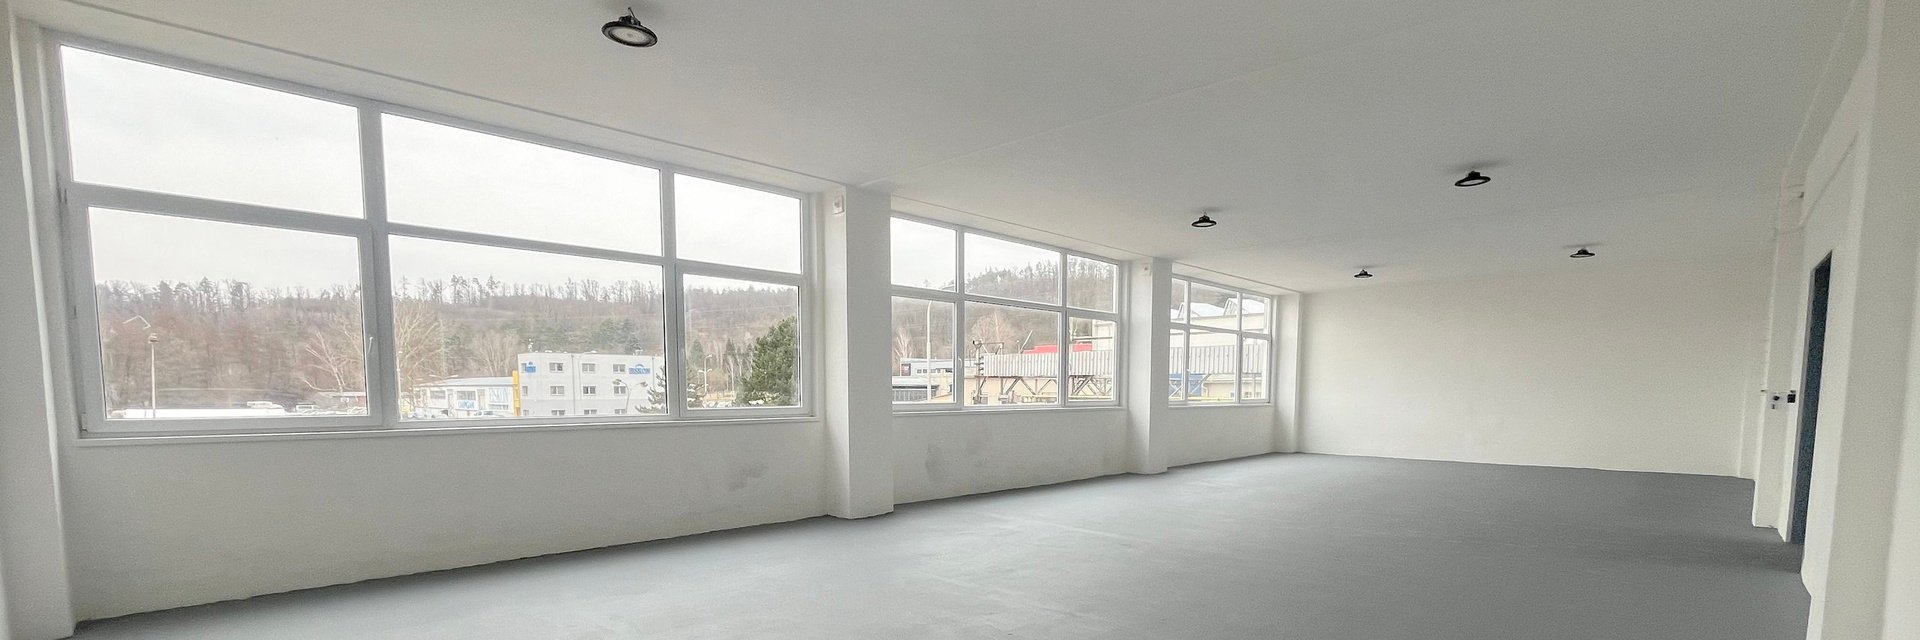 Pronájem skladového prostoru 150 m², Brno - Řečkovice